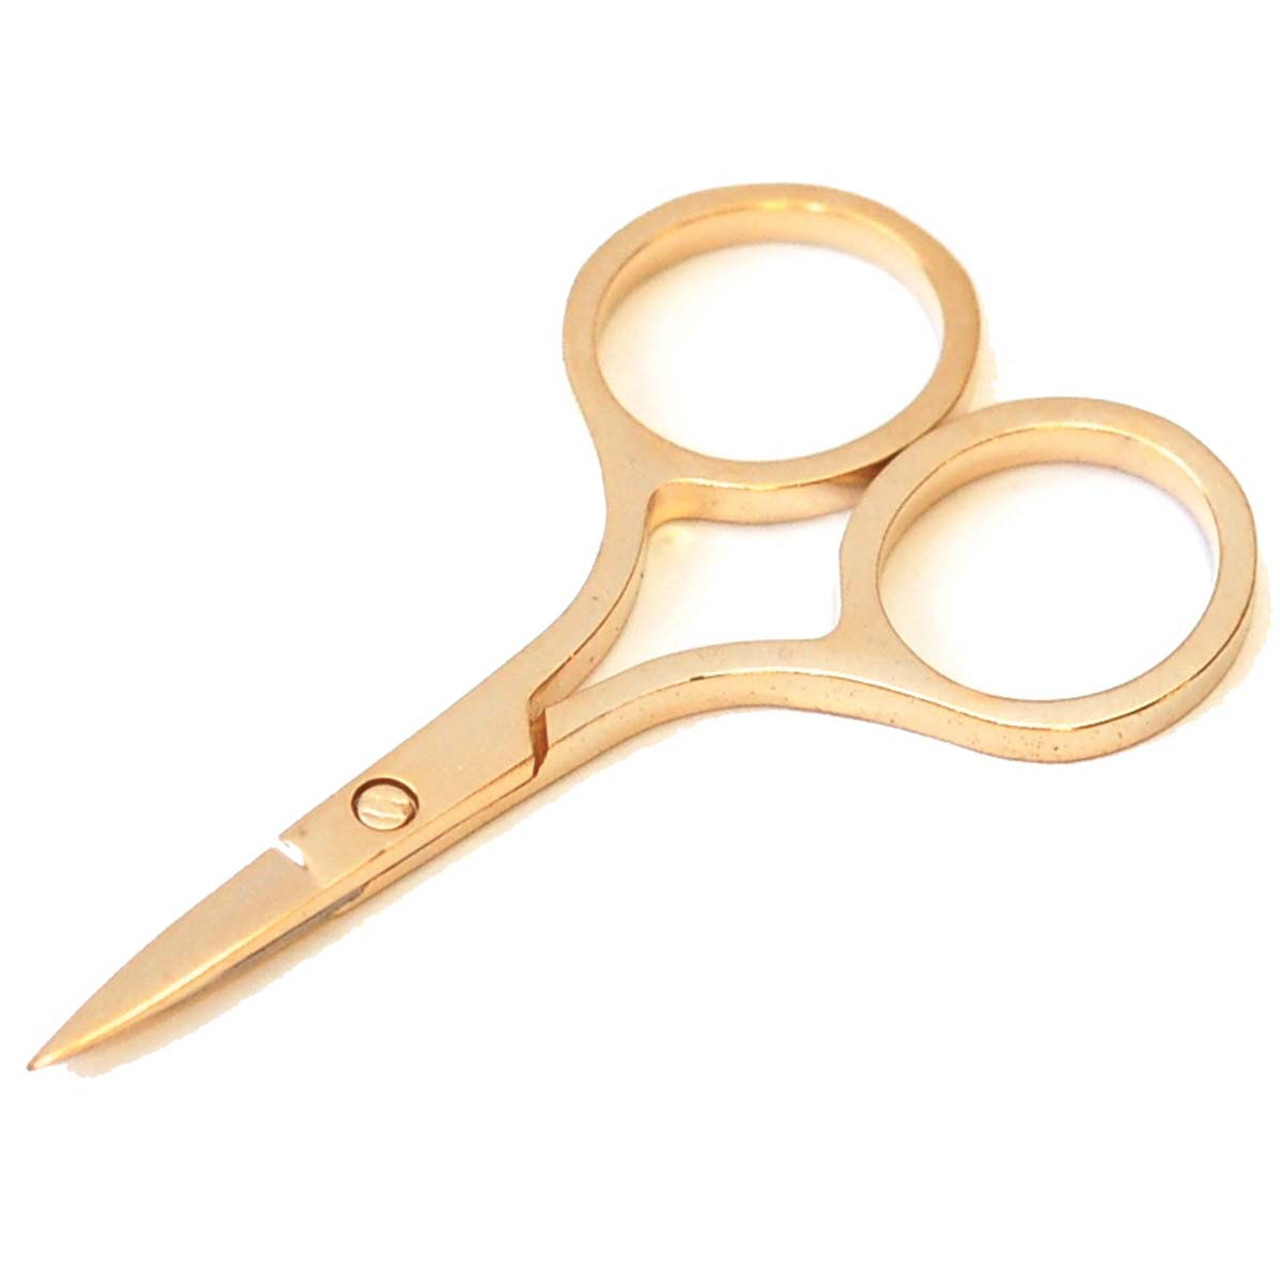 Small Gold Scissors 